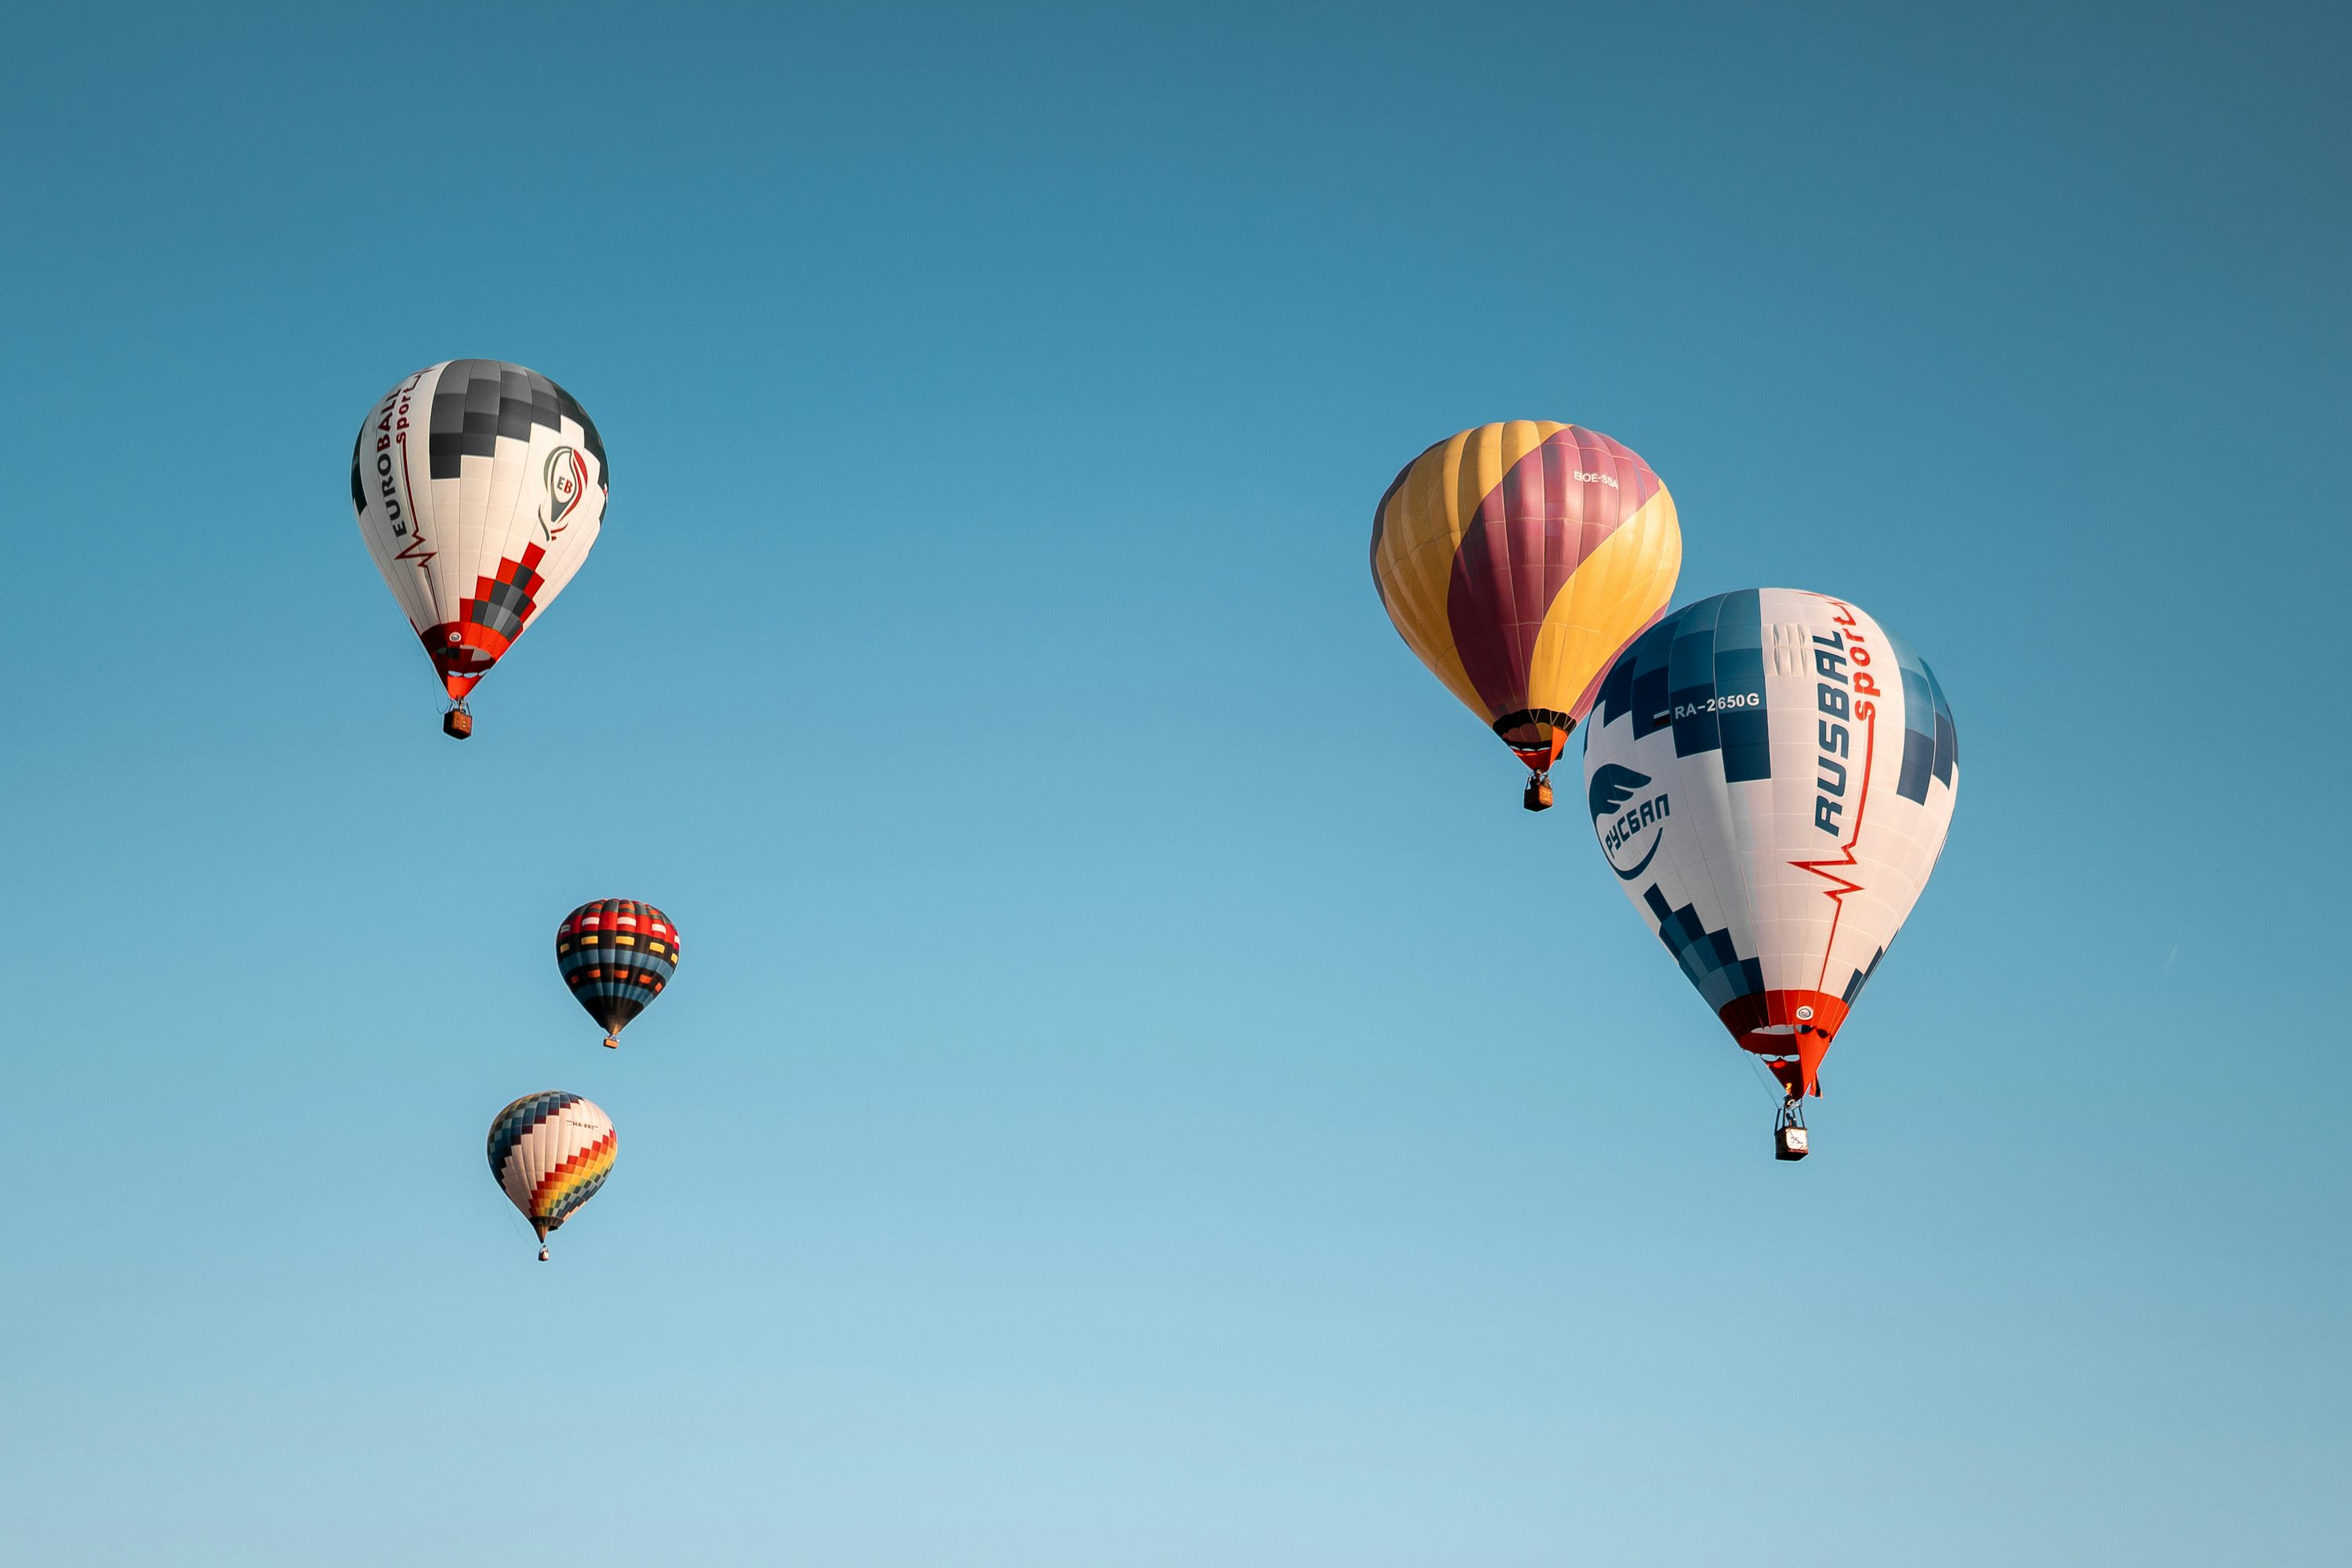 Un grupo de globos aerostáticos volando a través de un cielo azul